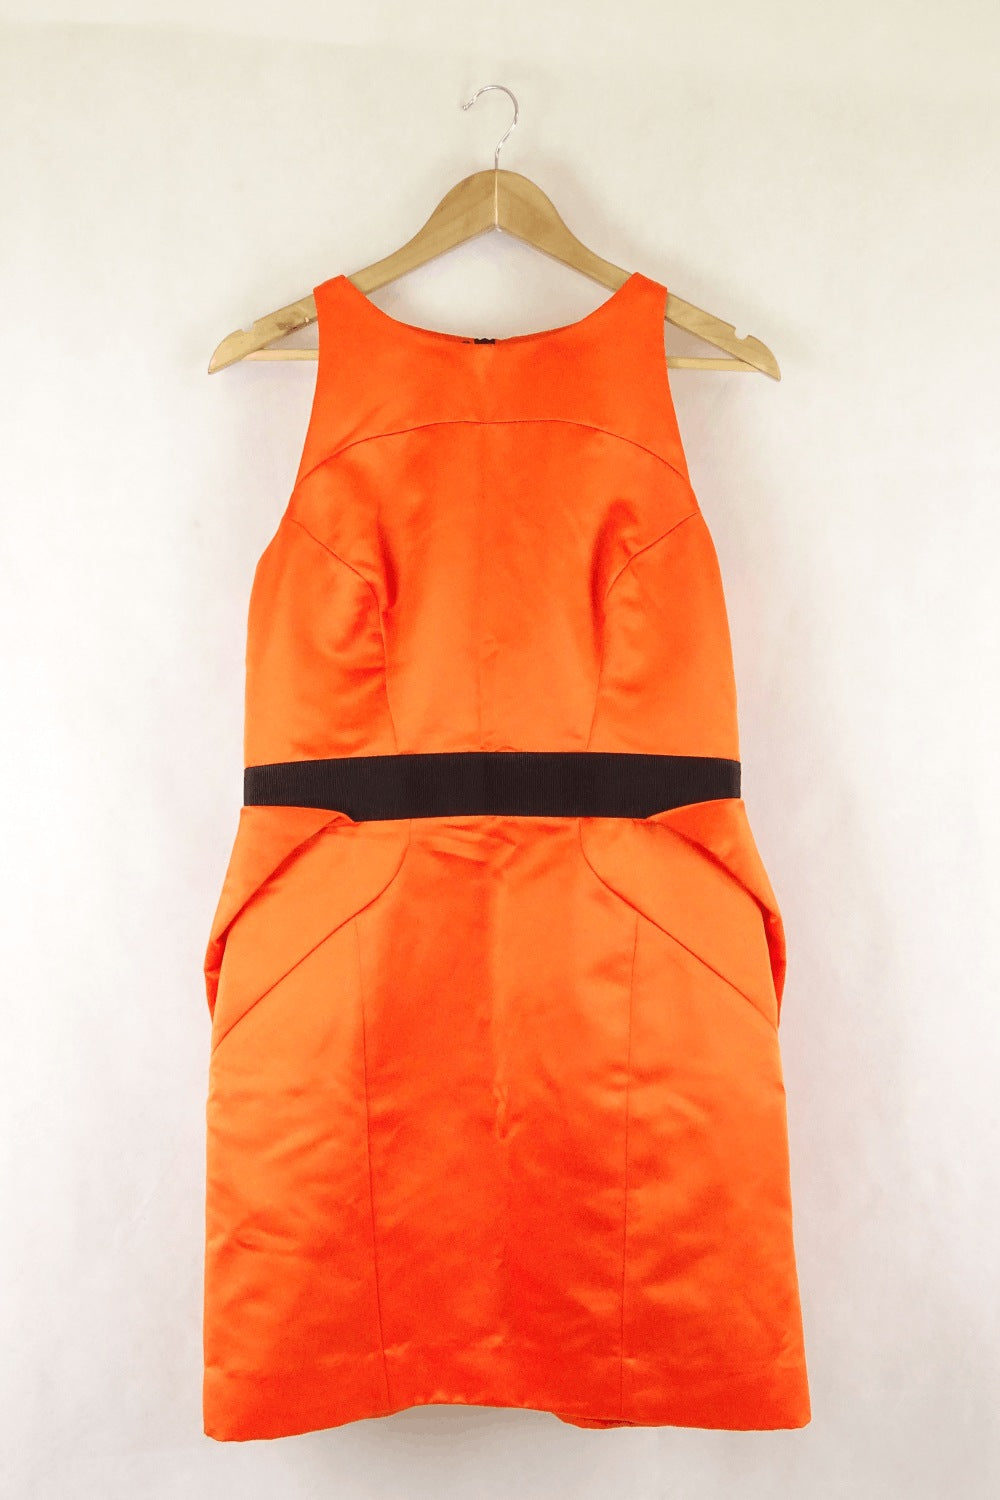 Milly Orange Dress 12